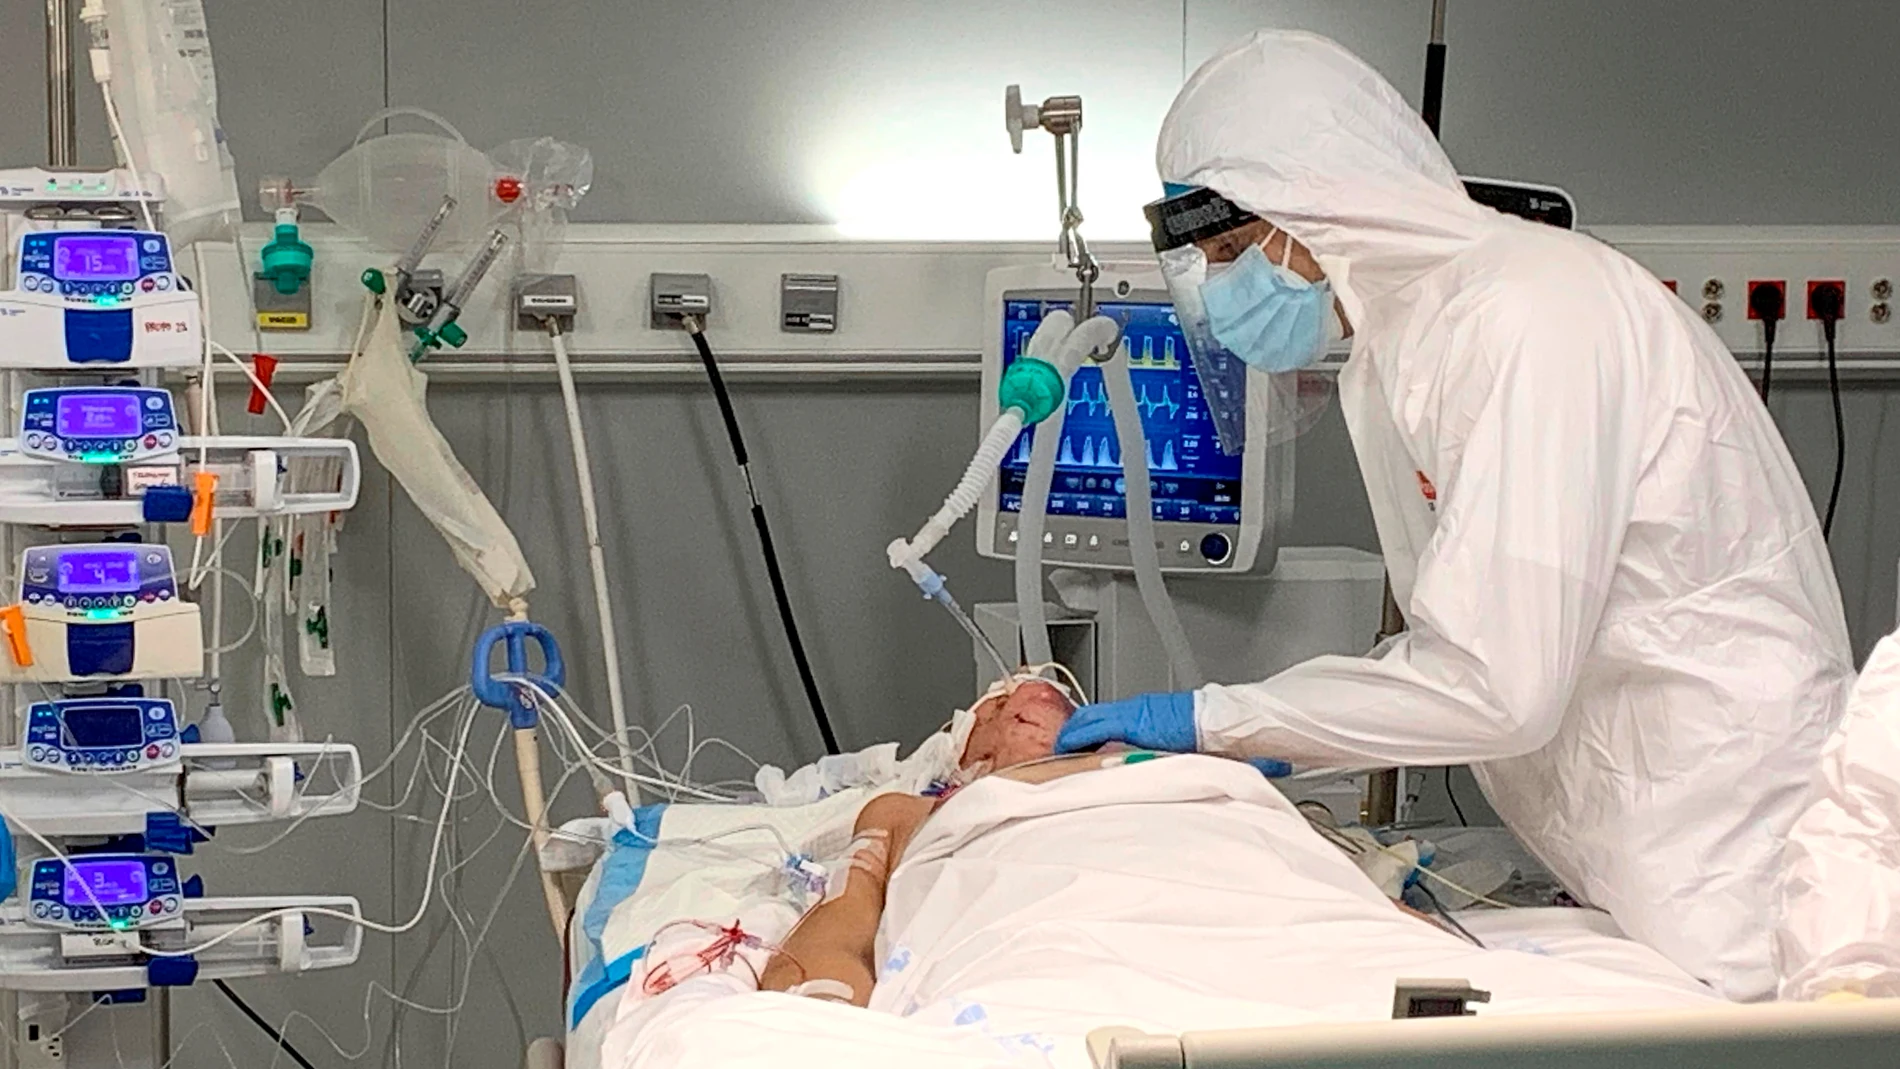 Sanitario tratando a una paciente COVID en el hospital Zendal